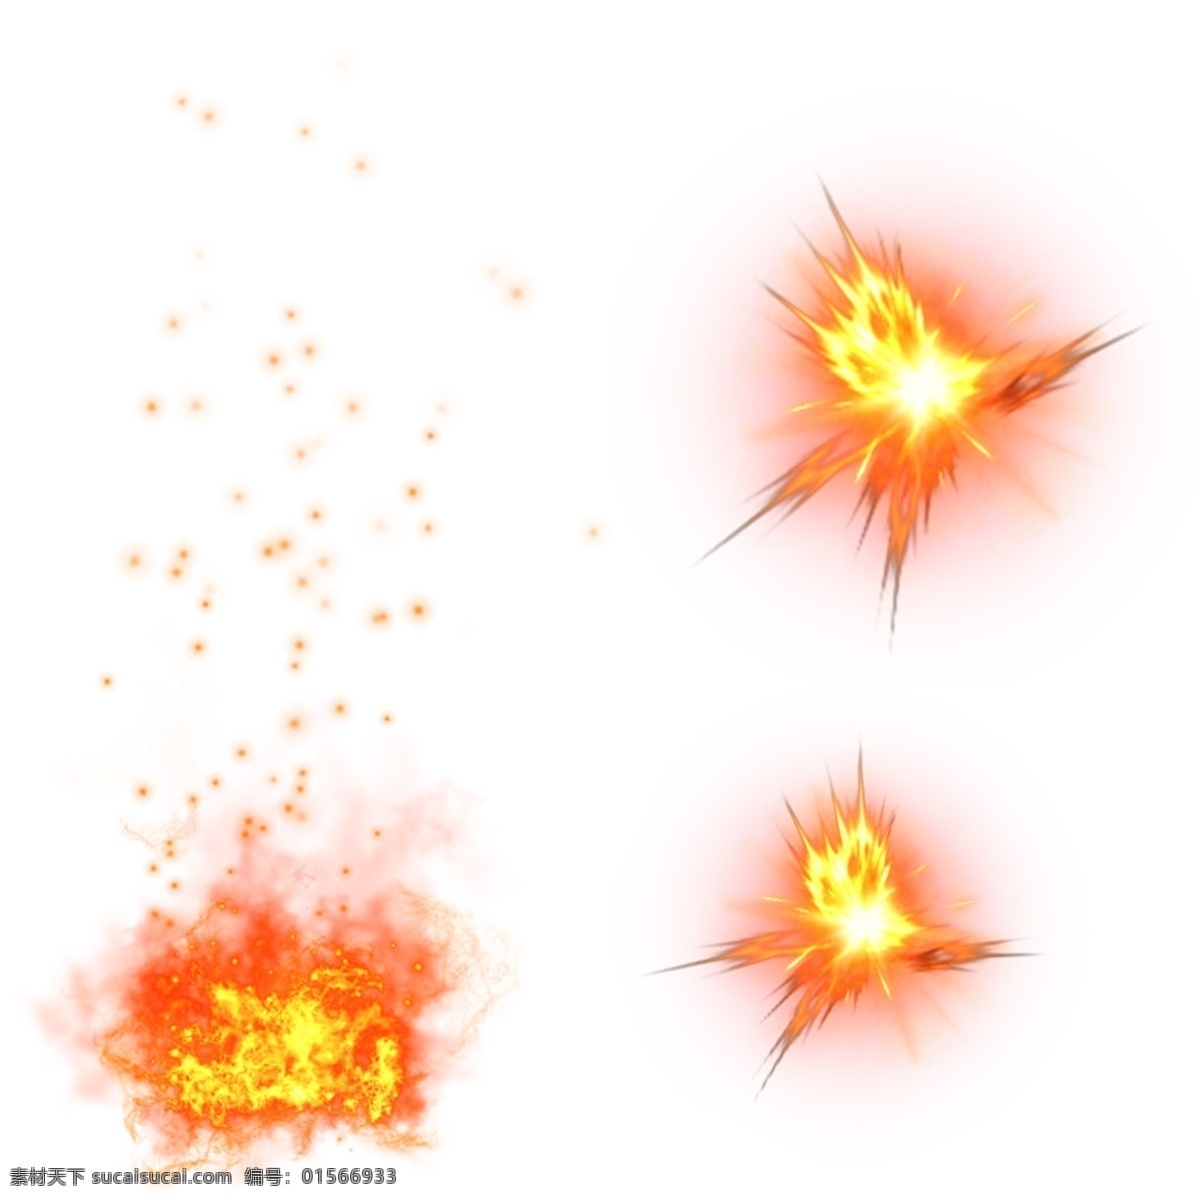 爆炸火光图片 爆炸火光 爆炸 红色光束 光束 爆炸素材 火苗 火